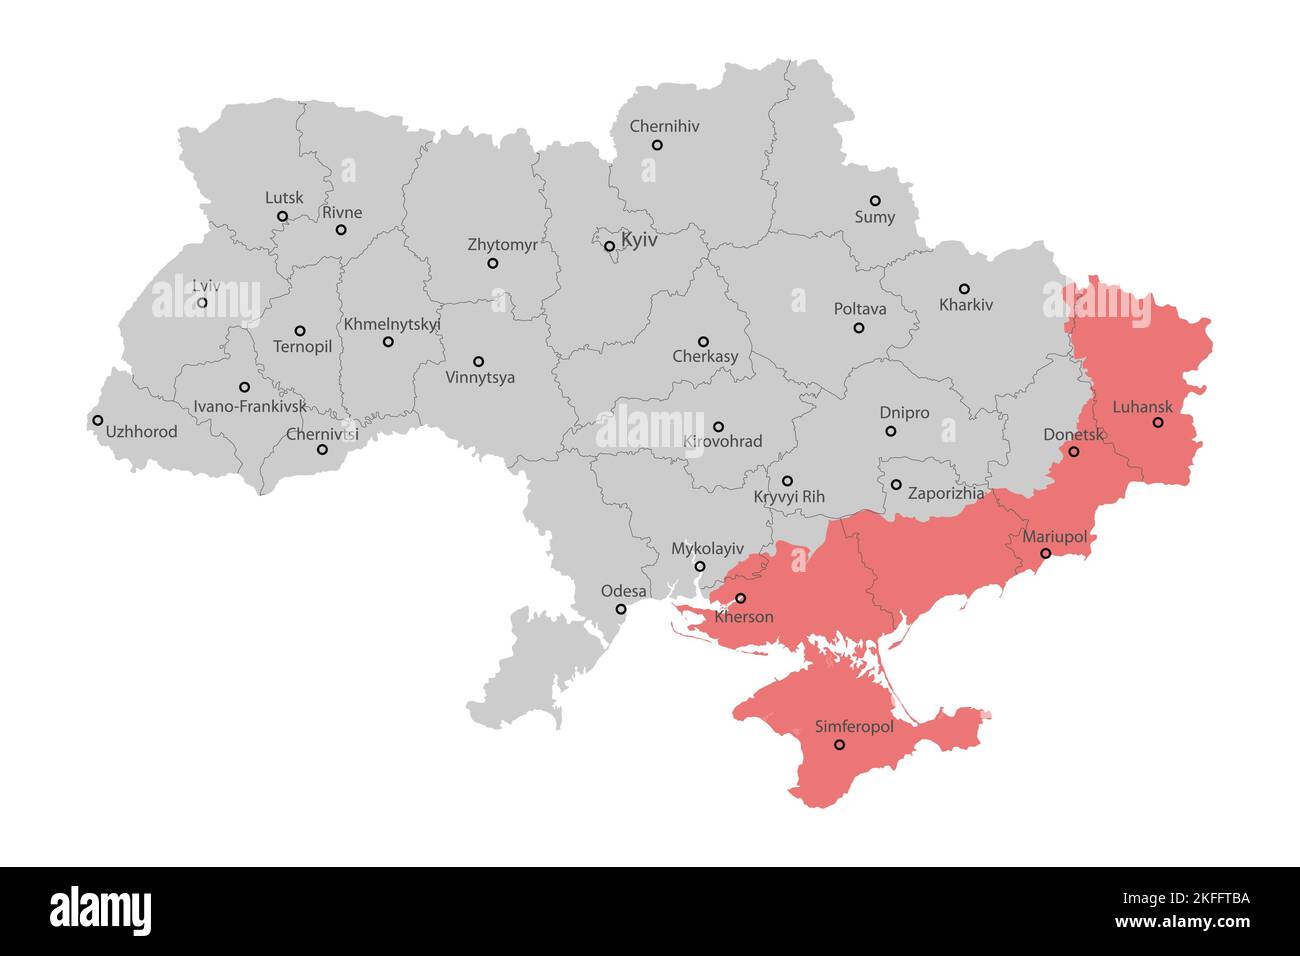 Mappa politica dell'Ucraina con i confini delle regioni Illustrazione Vettoriale